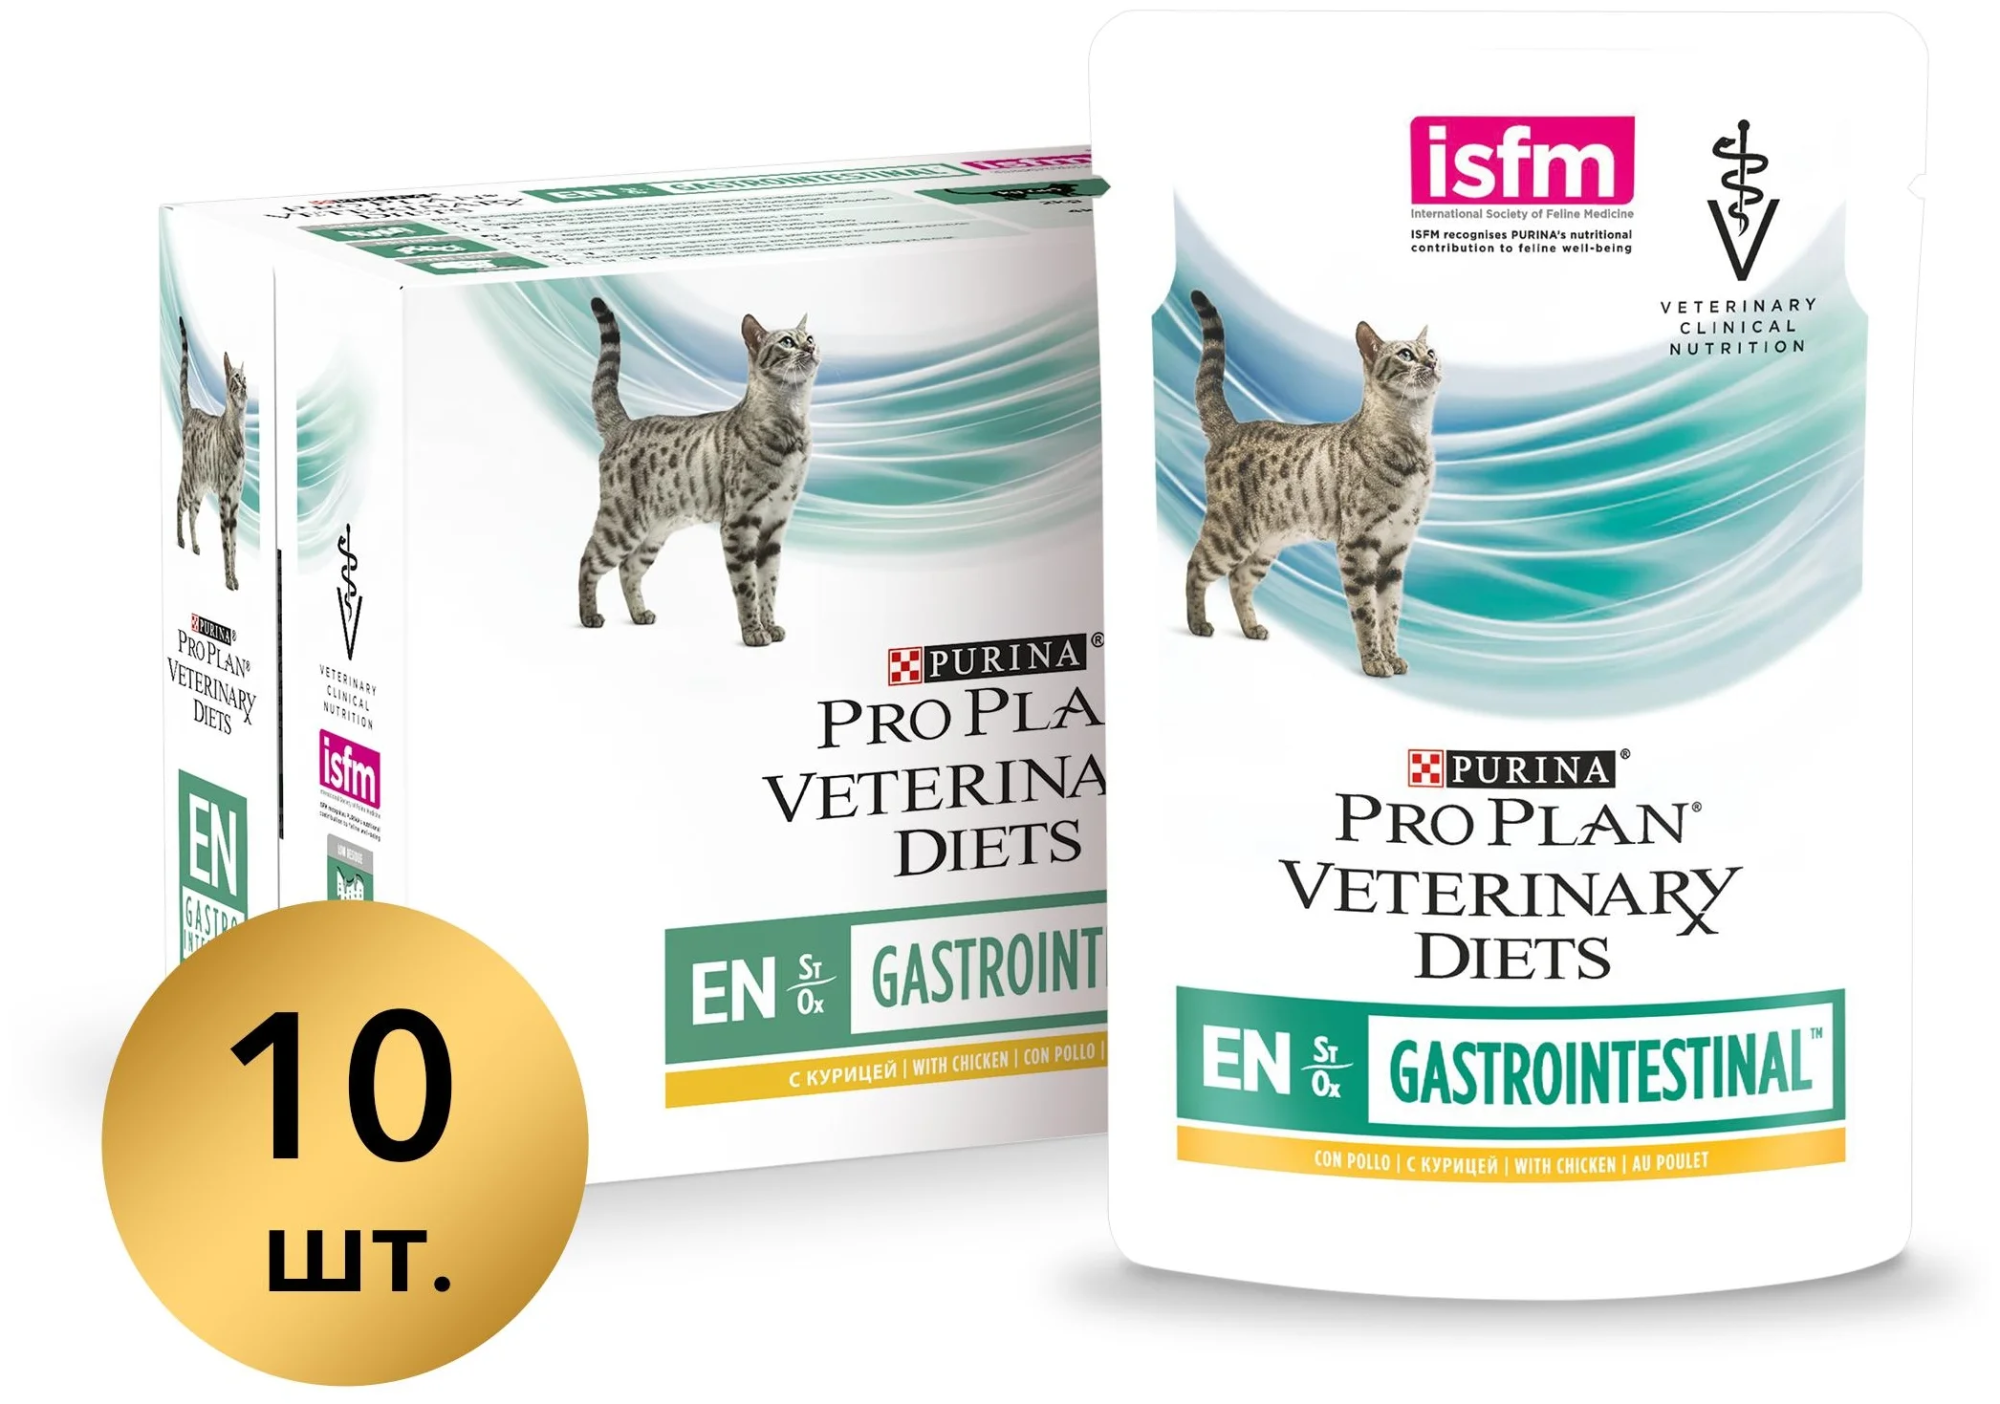 Gastrointestinal влажный для кошек купить. Пауч Pro Plan Veterinary Diets ur Urinary для кошек лосось. Pro Plan Gastrointestinal для кошек. Purina Pro Plan Veterinary Diets Gastrointestinal для кошек. Purina Veterinary Diets en Gastrointestinal.